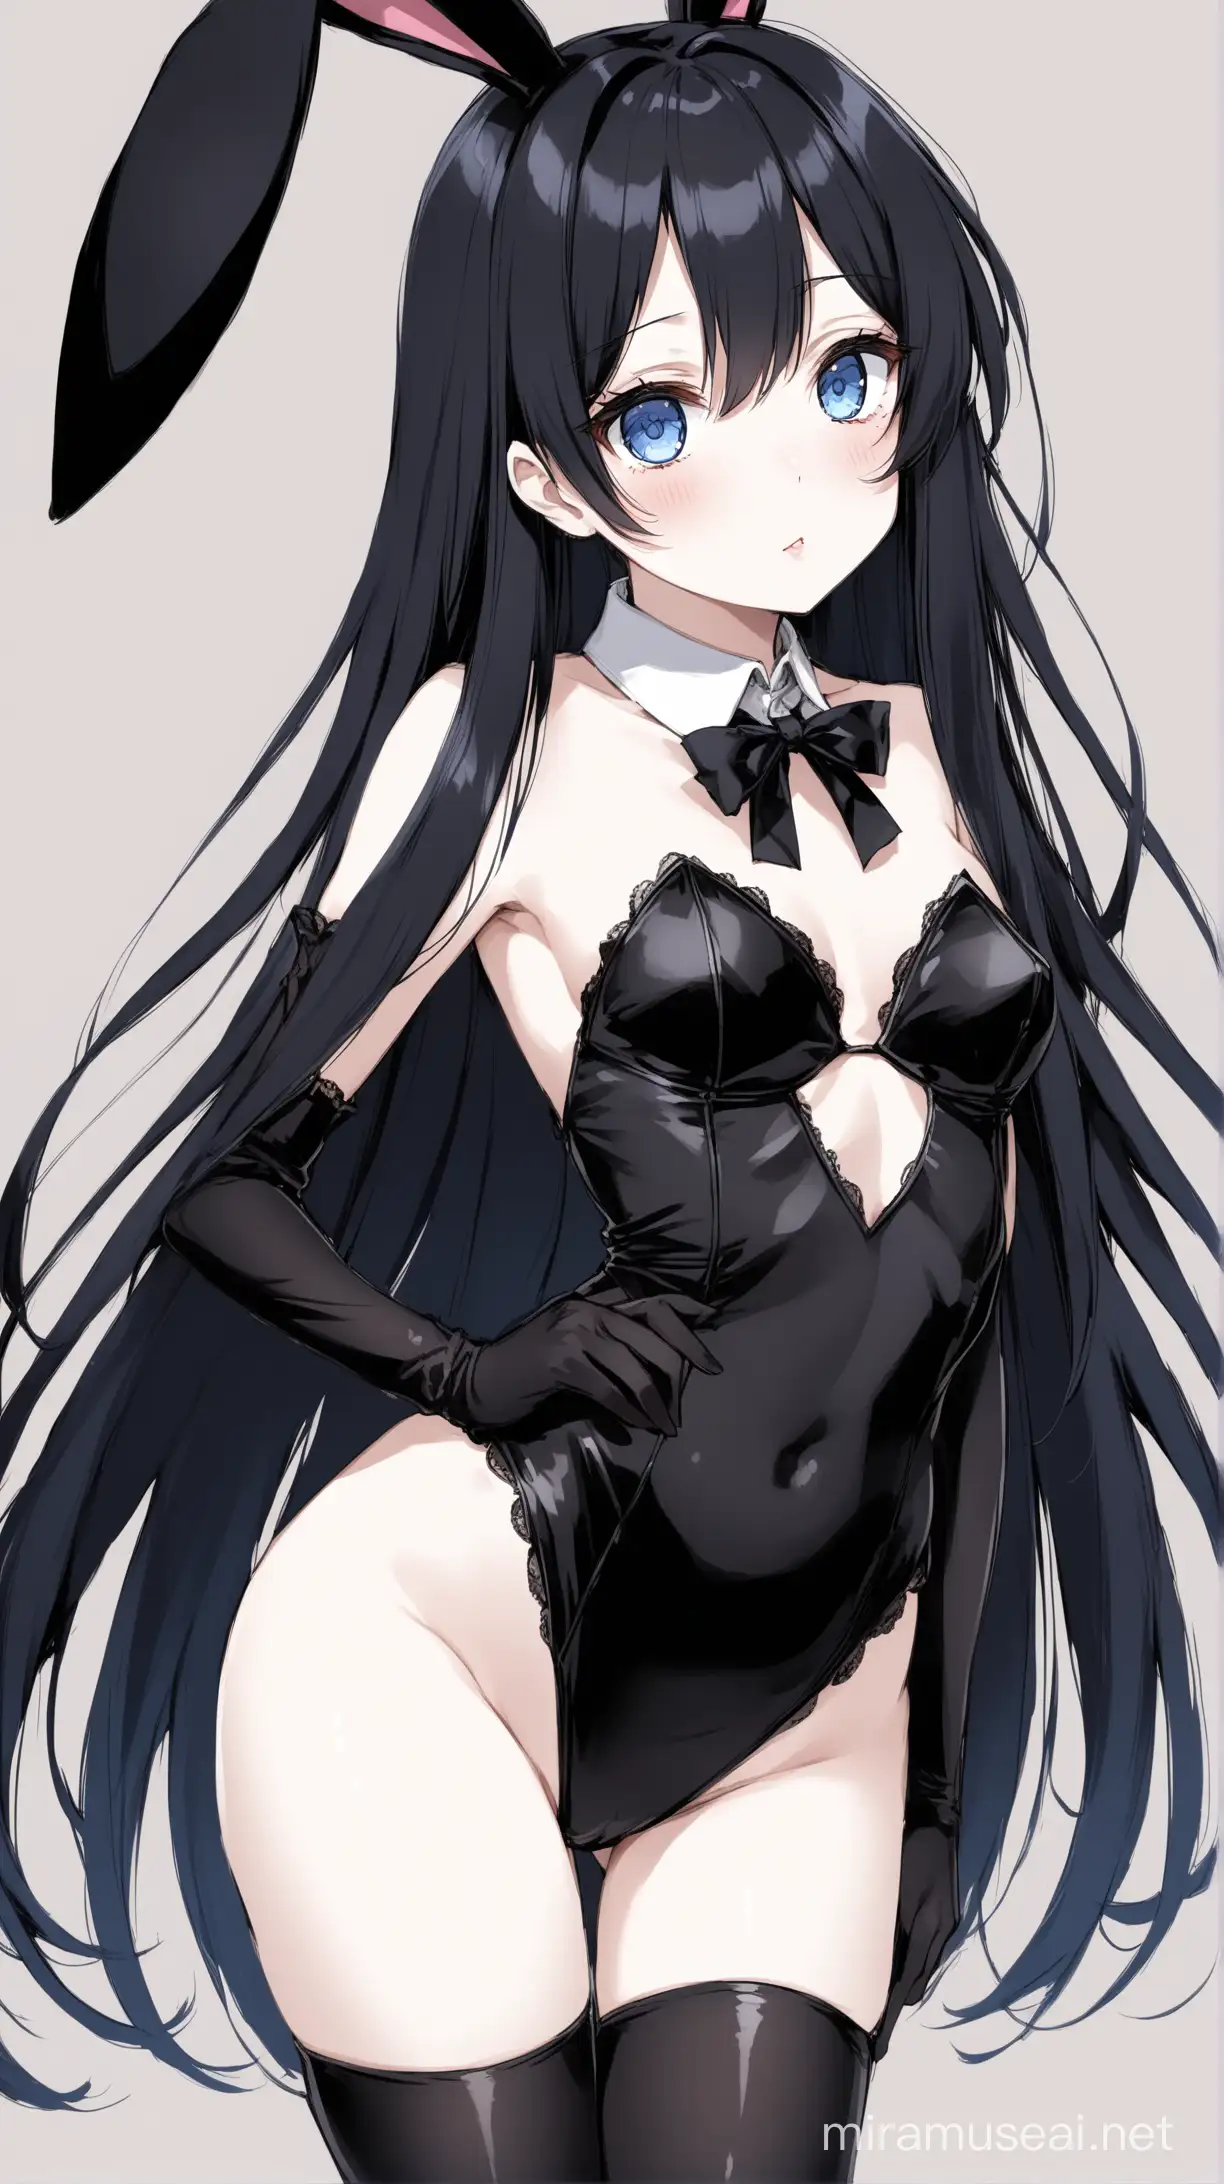 Uma mulher com cabelos longos e escuros, olhos azuis, pele branca, seios pequenos, coxas pequenas; vestida com uma roupa de coelhinha preta sexy, anime 